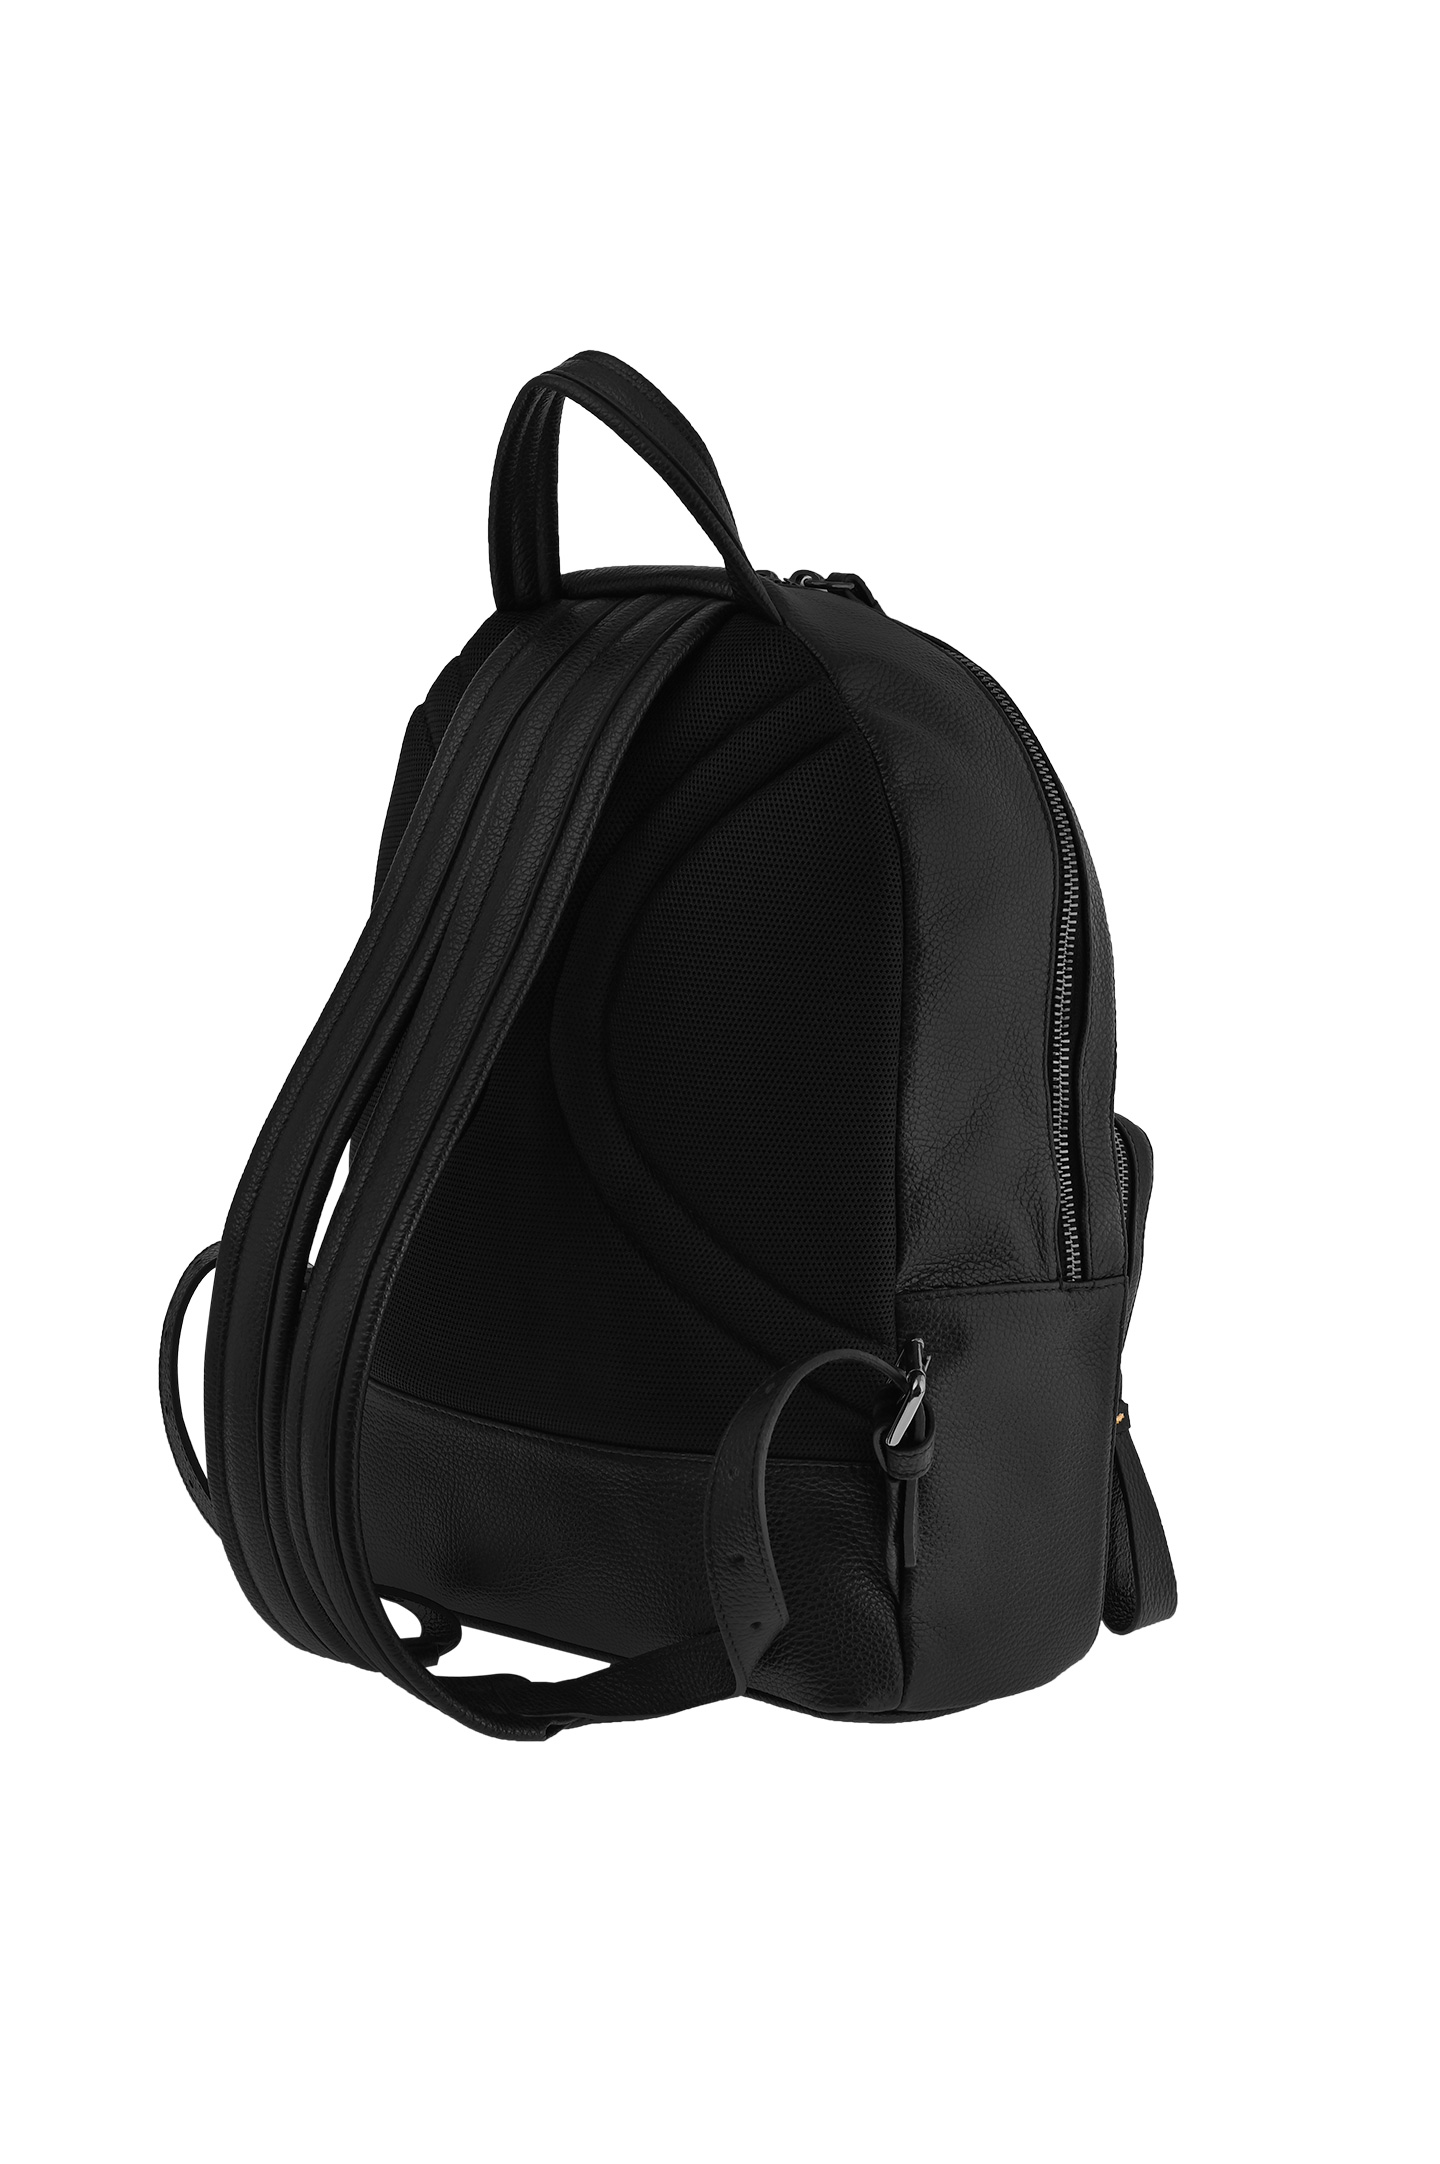 Рюкзак DOUCAL'S DZ0005-02UF9720, цвет: Черный, Мужской